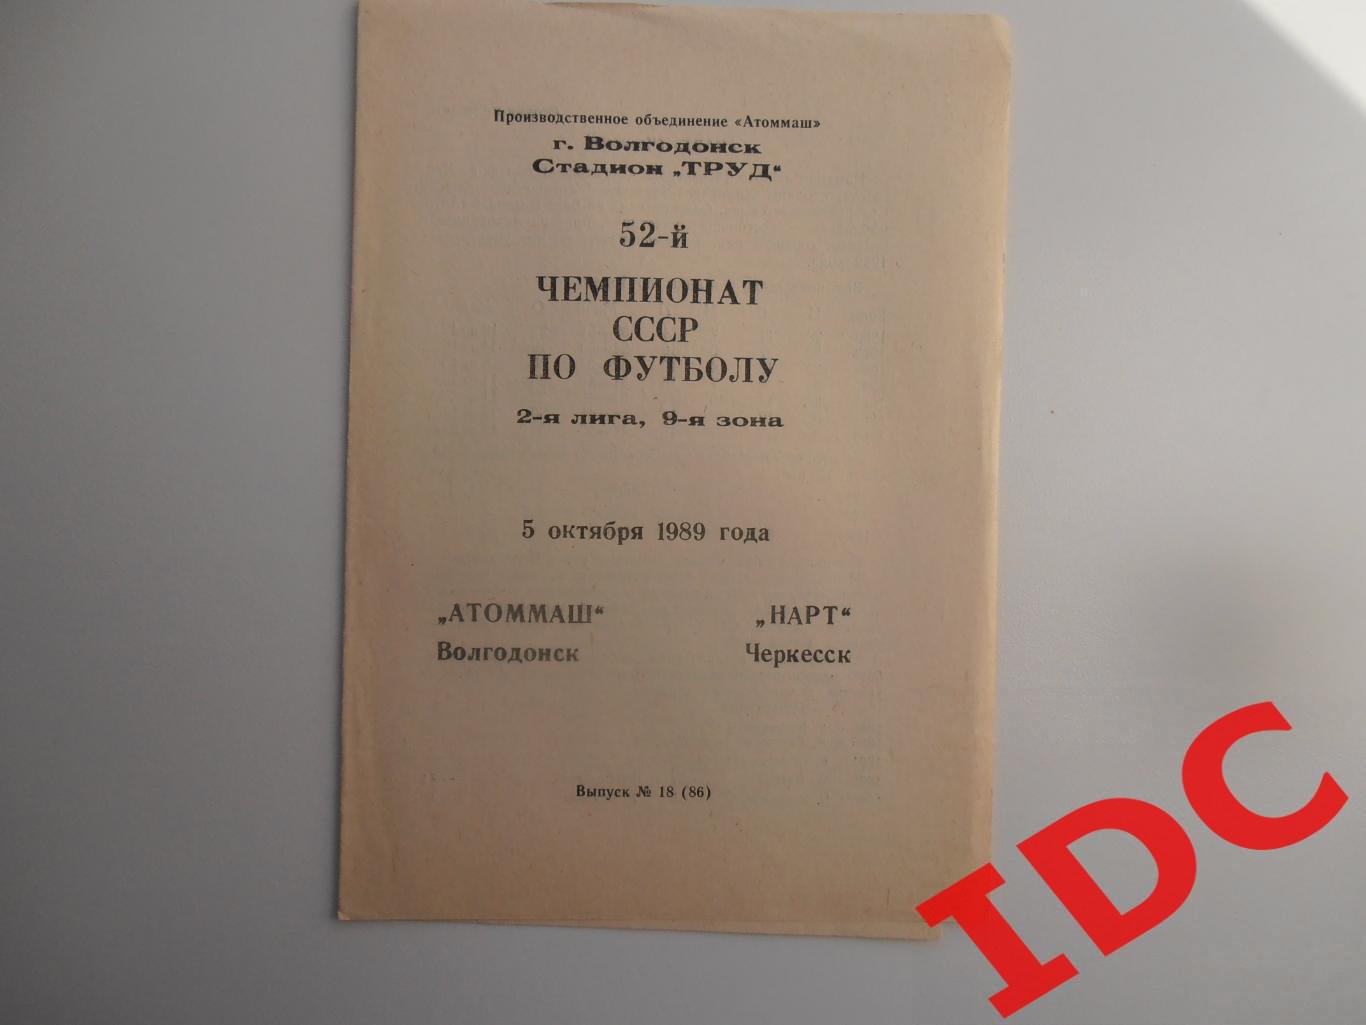 Атоммаш Волгодонск-Нарт Черкесск 5 октября 1989